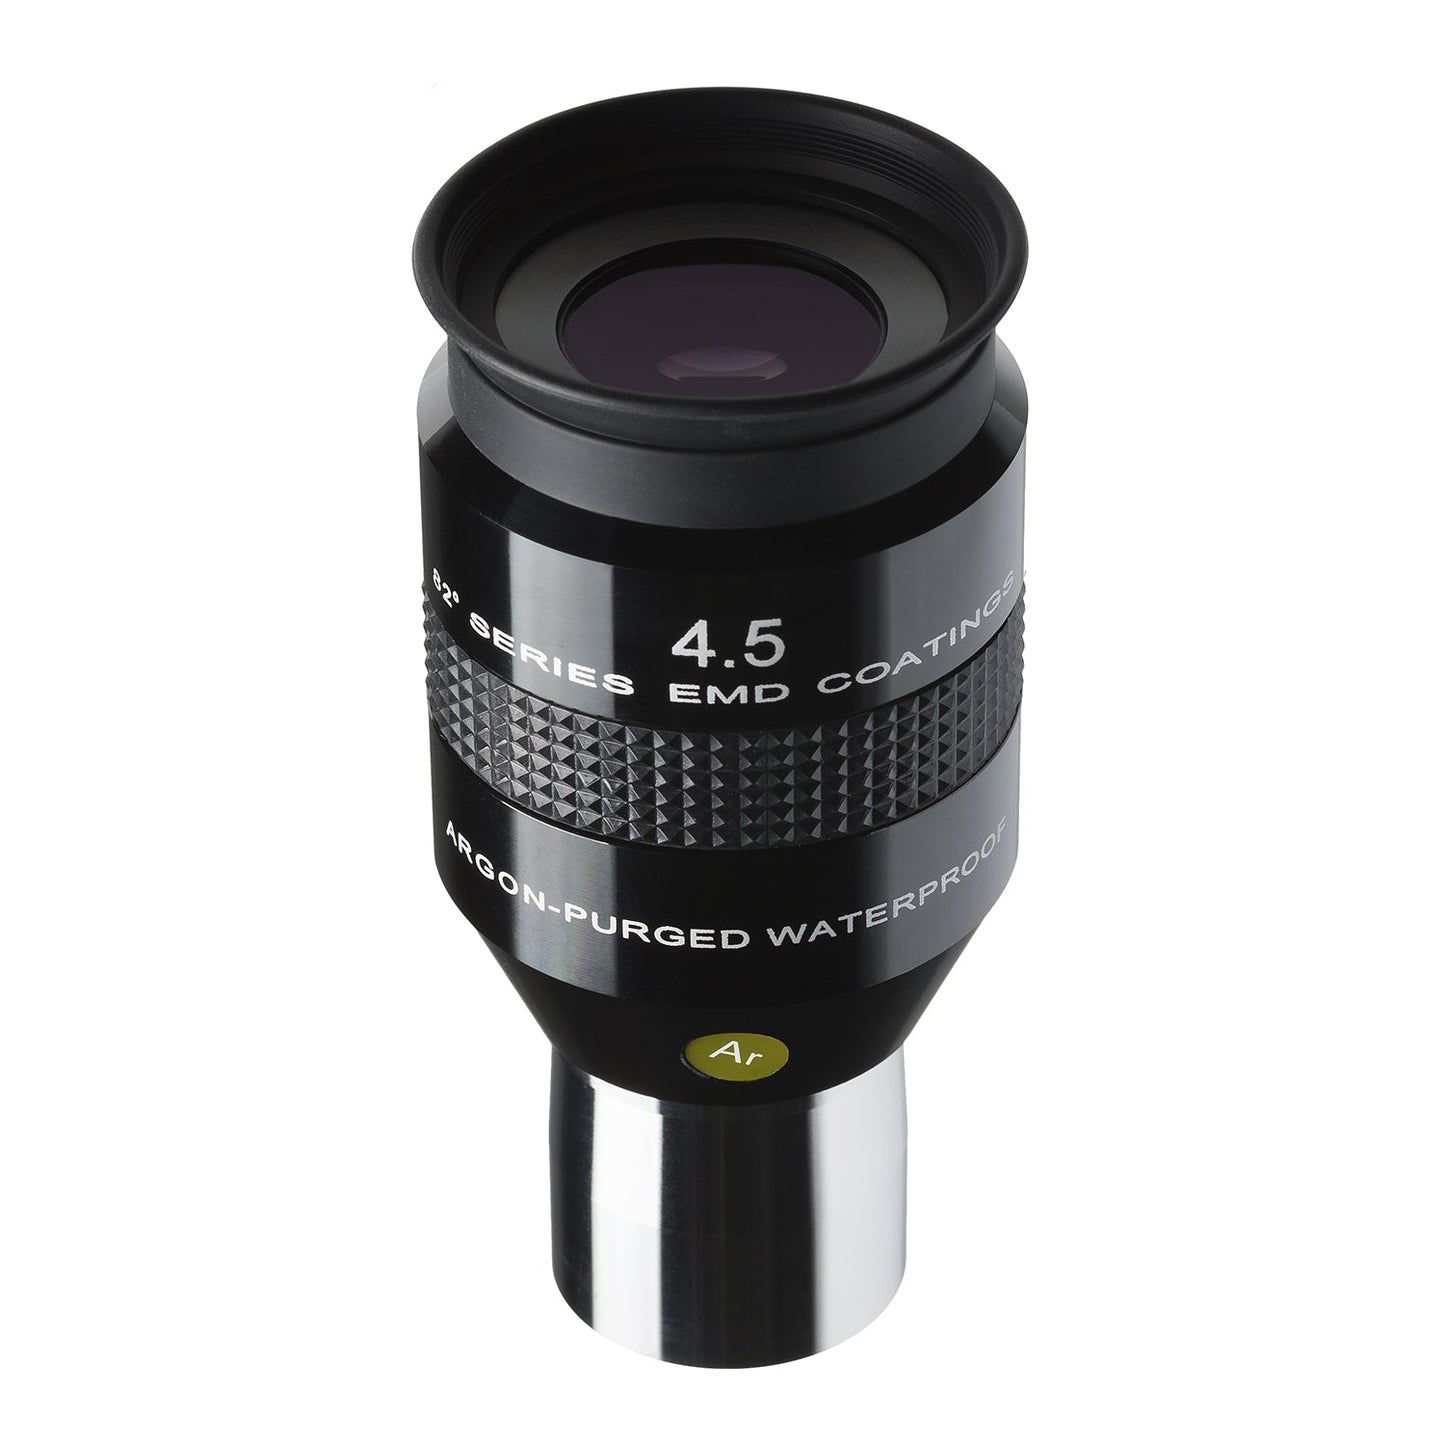 Explore Scientific 4.5mm 82° Series LER Waterproof Eyepiece - EPWP8245LE-01